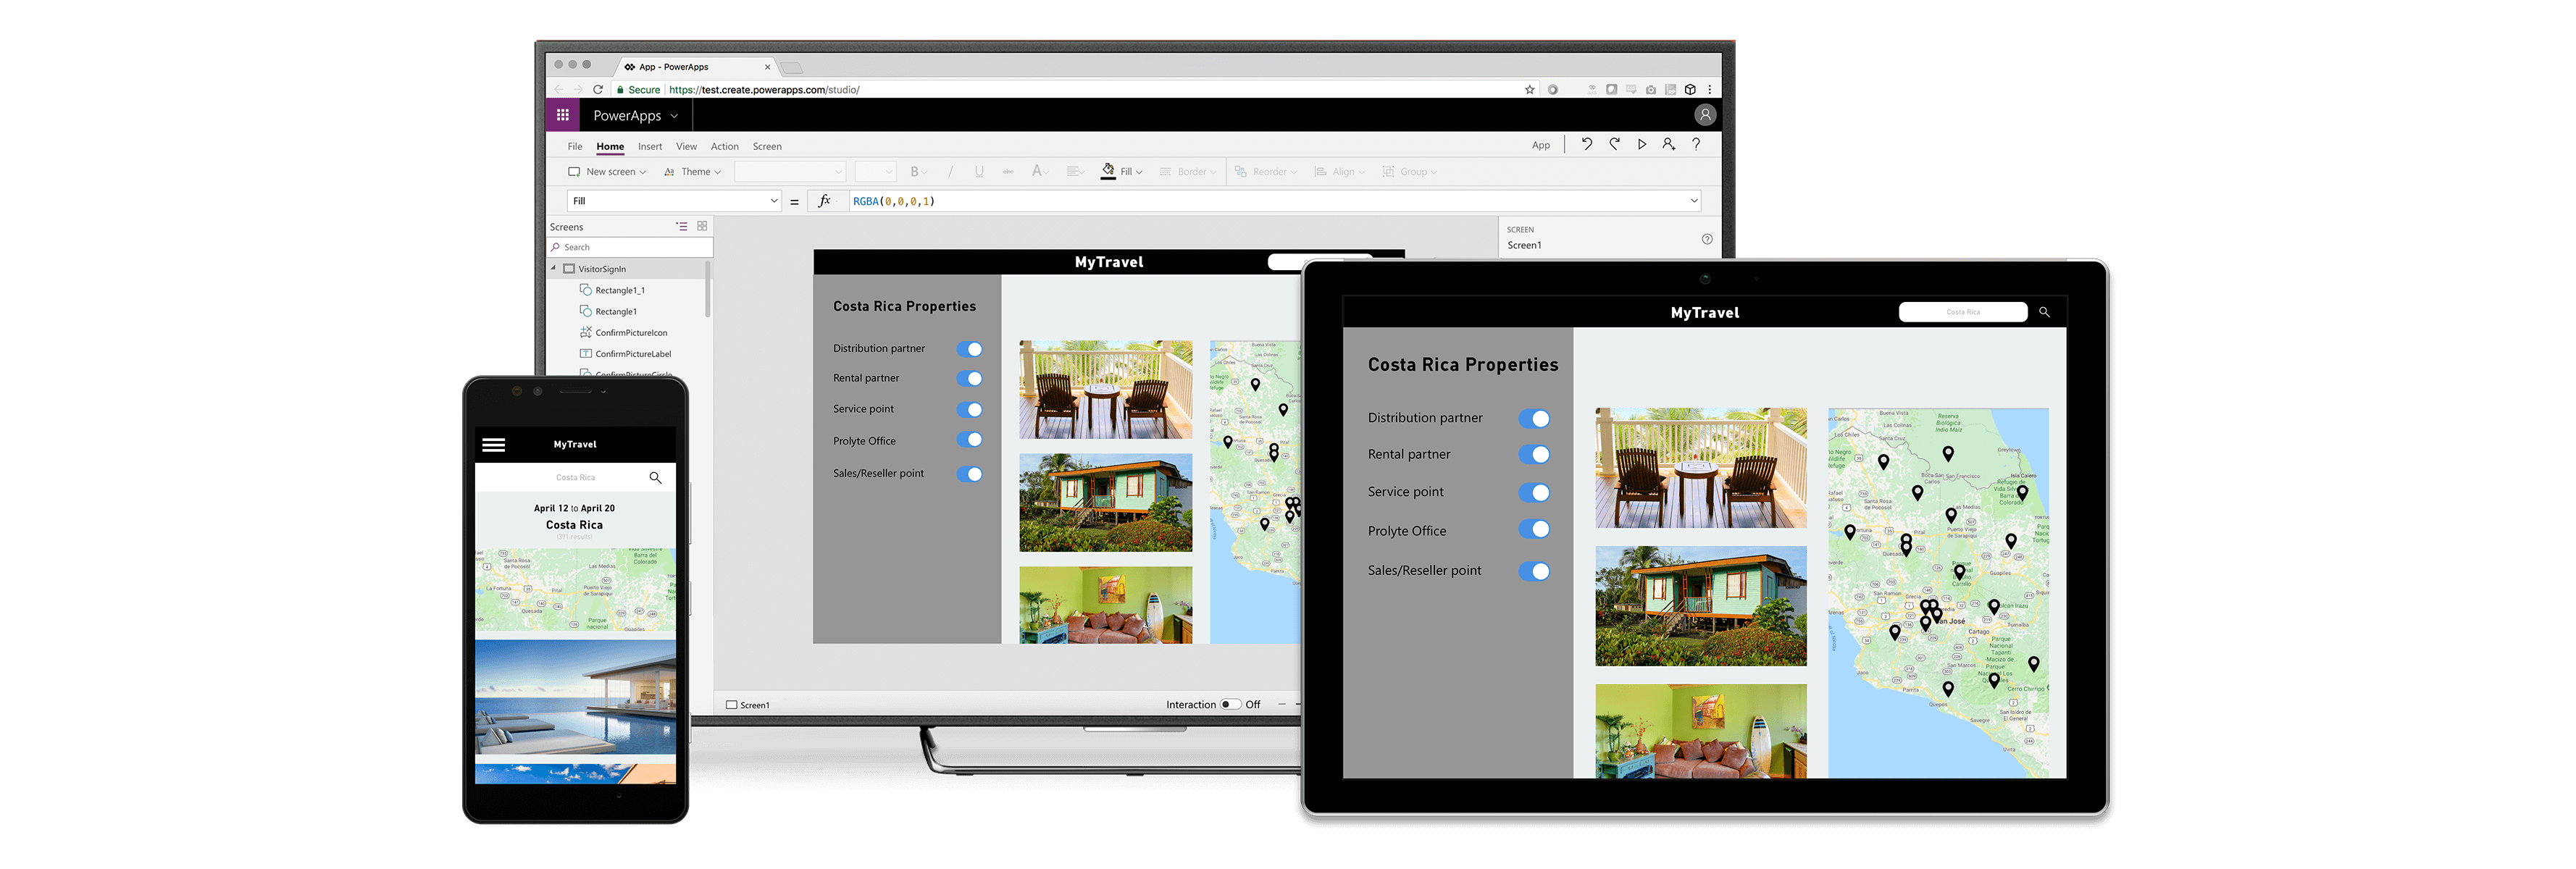 Imagen de aplicaciones de empresa con Power Apps en escritorio, móvil y tablet